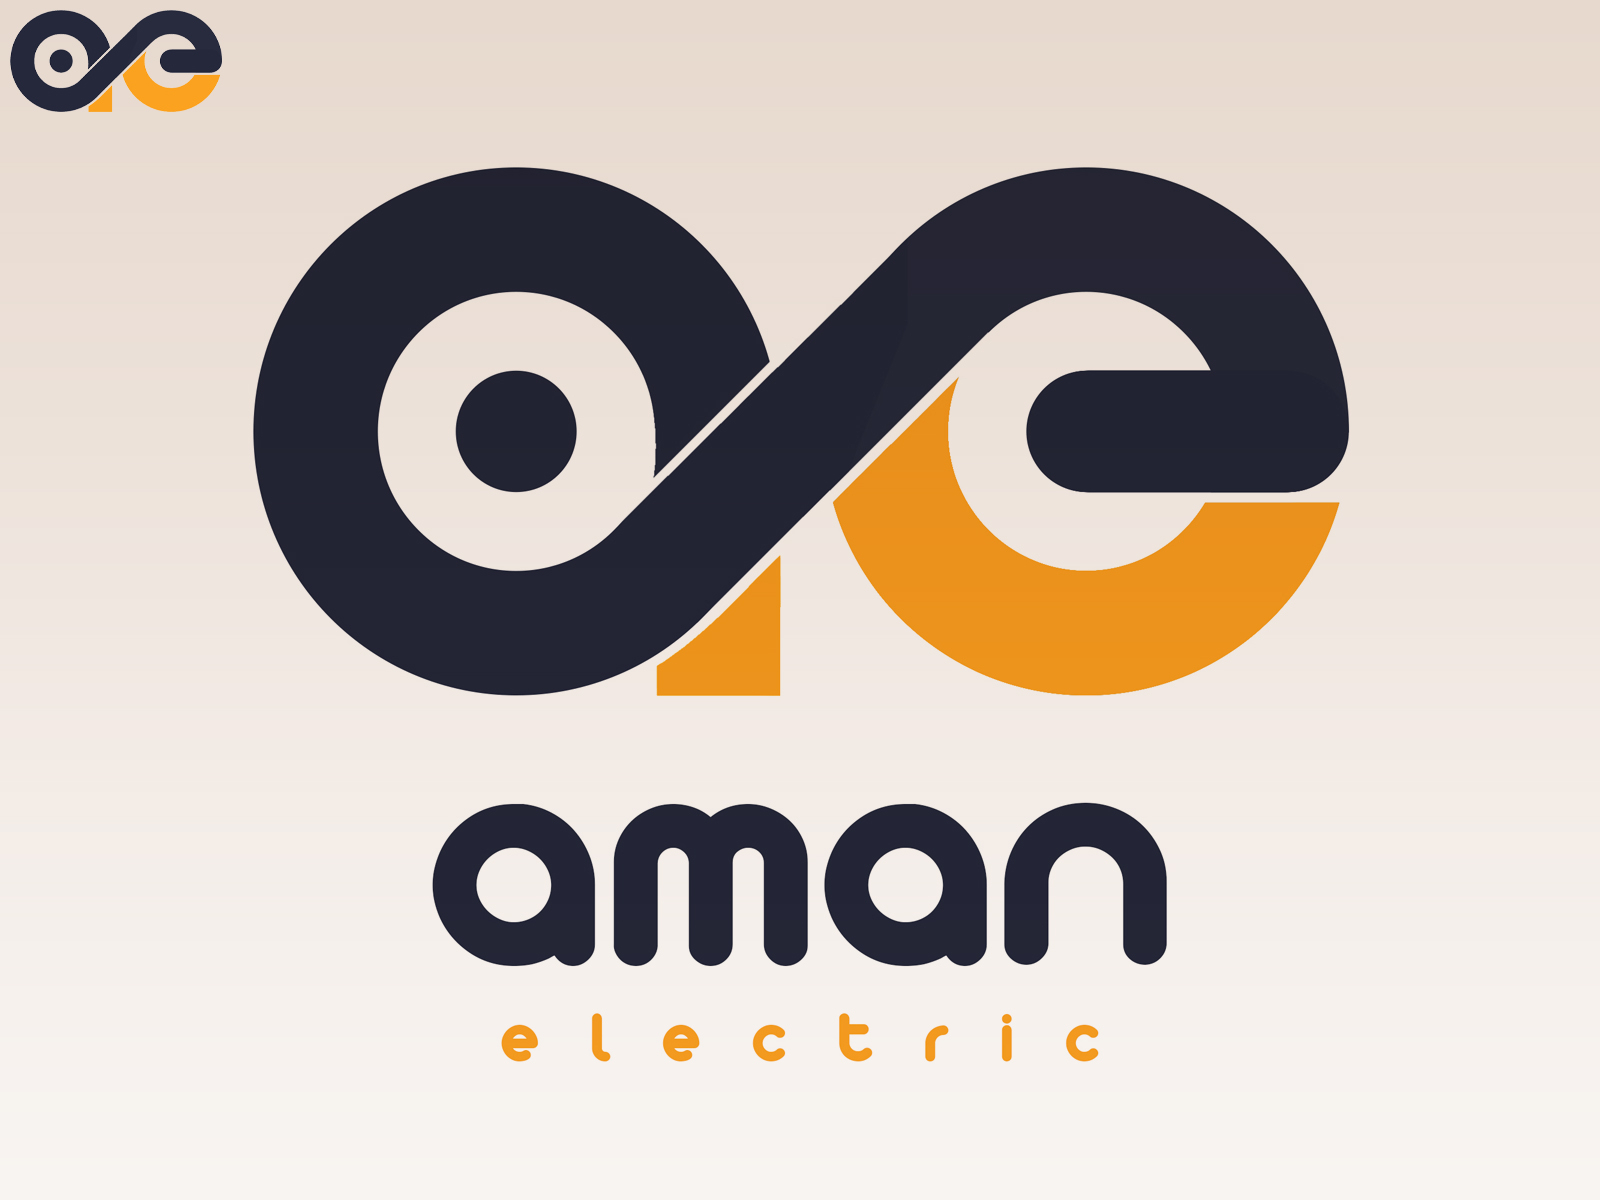 AMAN ELECTRIC LOGO by Krunal Dudhagara on Dribbble